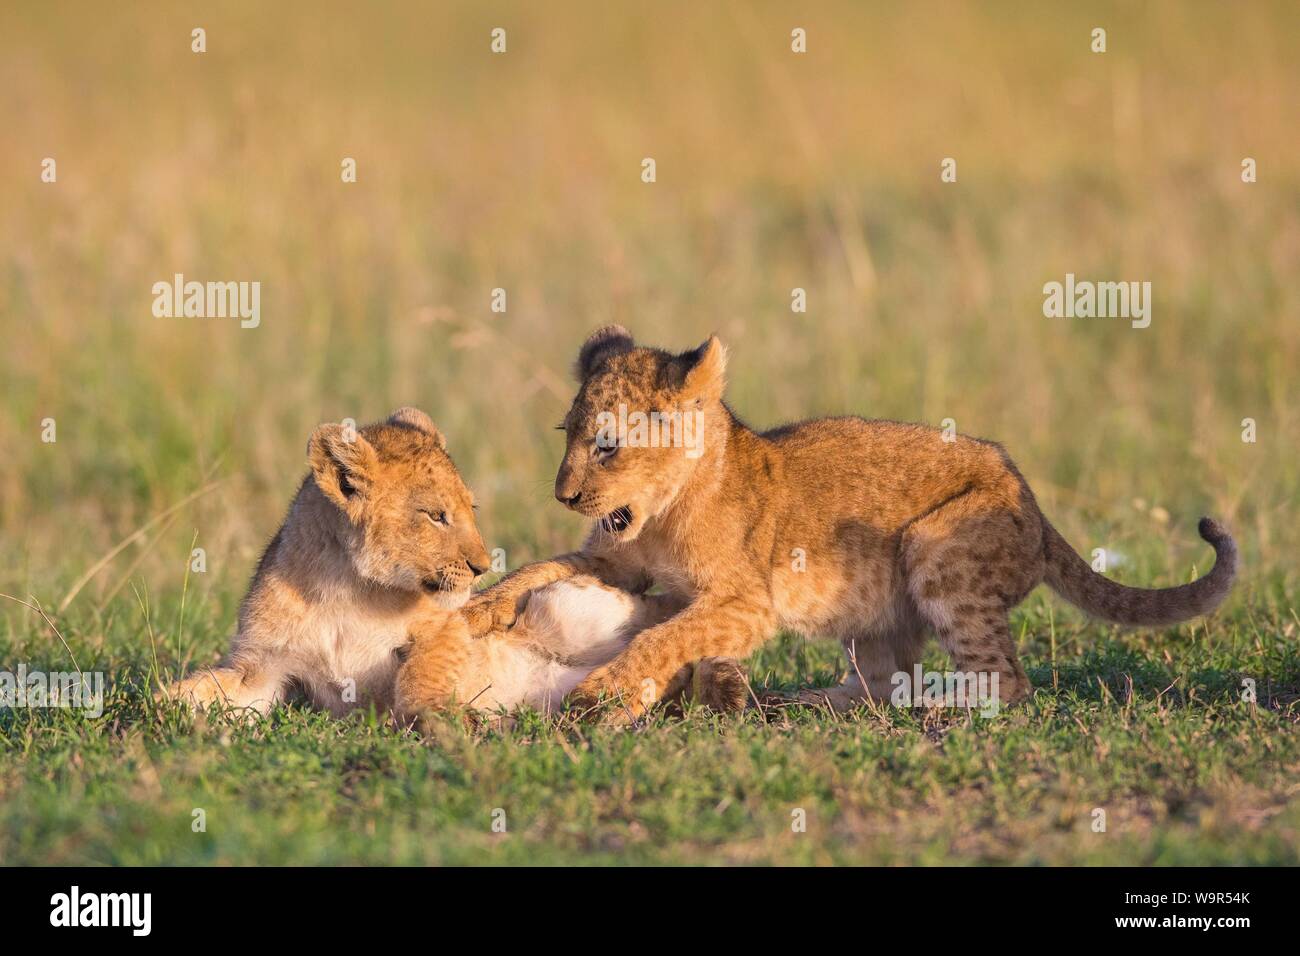 Deux oursons lion (Panthera leo) jouant dans l'herbe, Masai Mara National Reserve, Kenya Banque D'Images